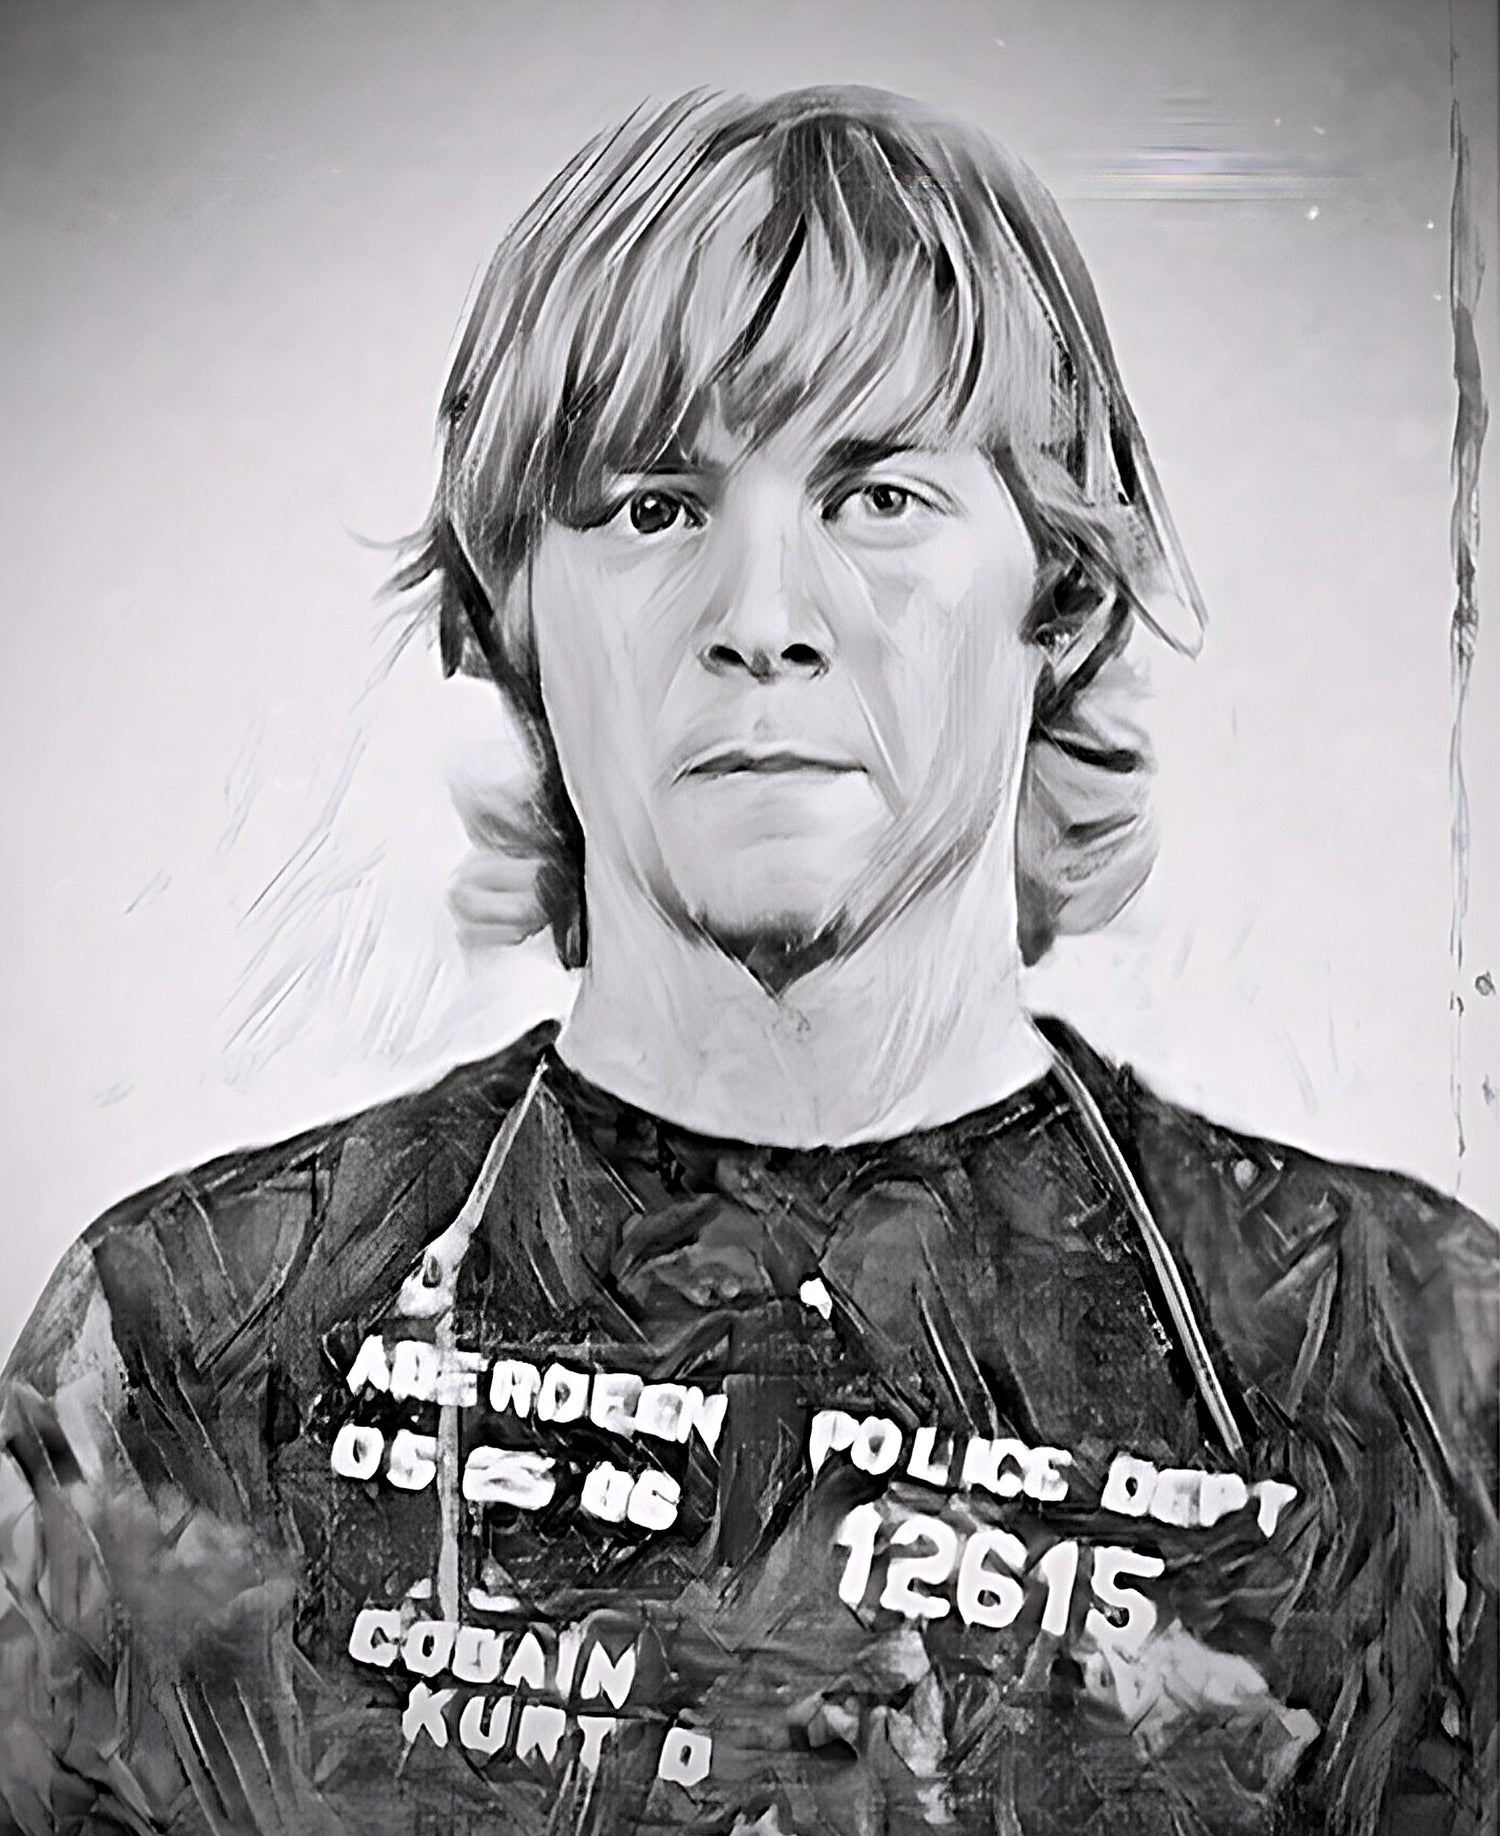 KCGB Kurt Cobain Mug Shot enhanced 